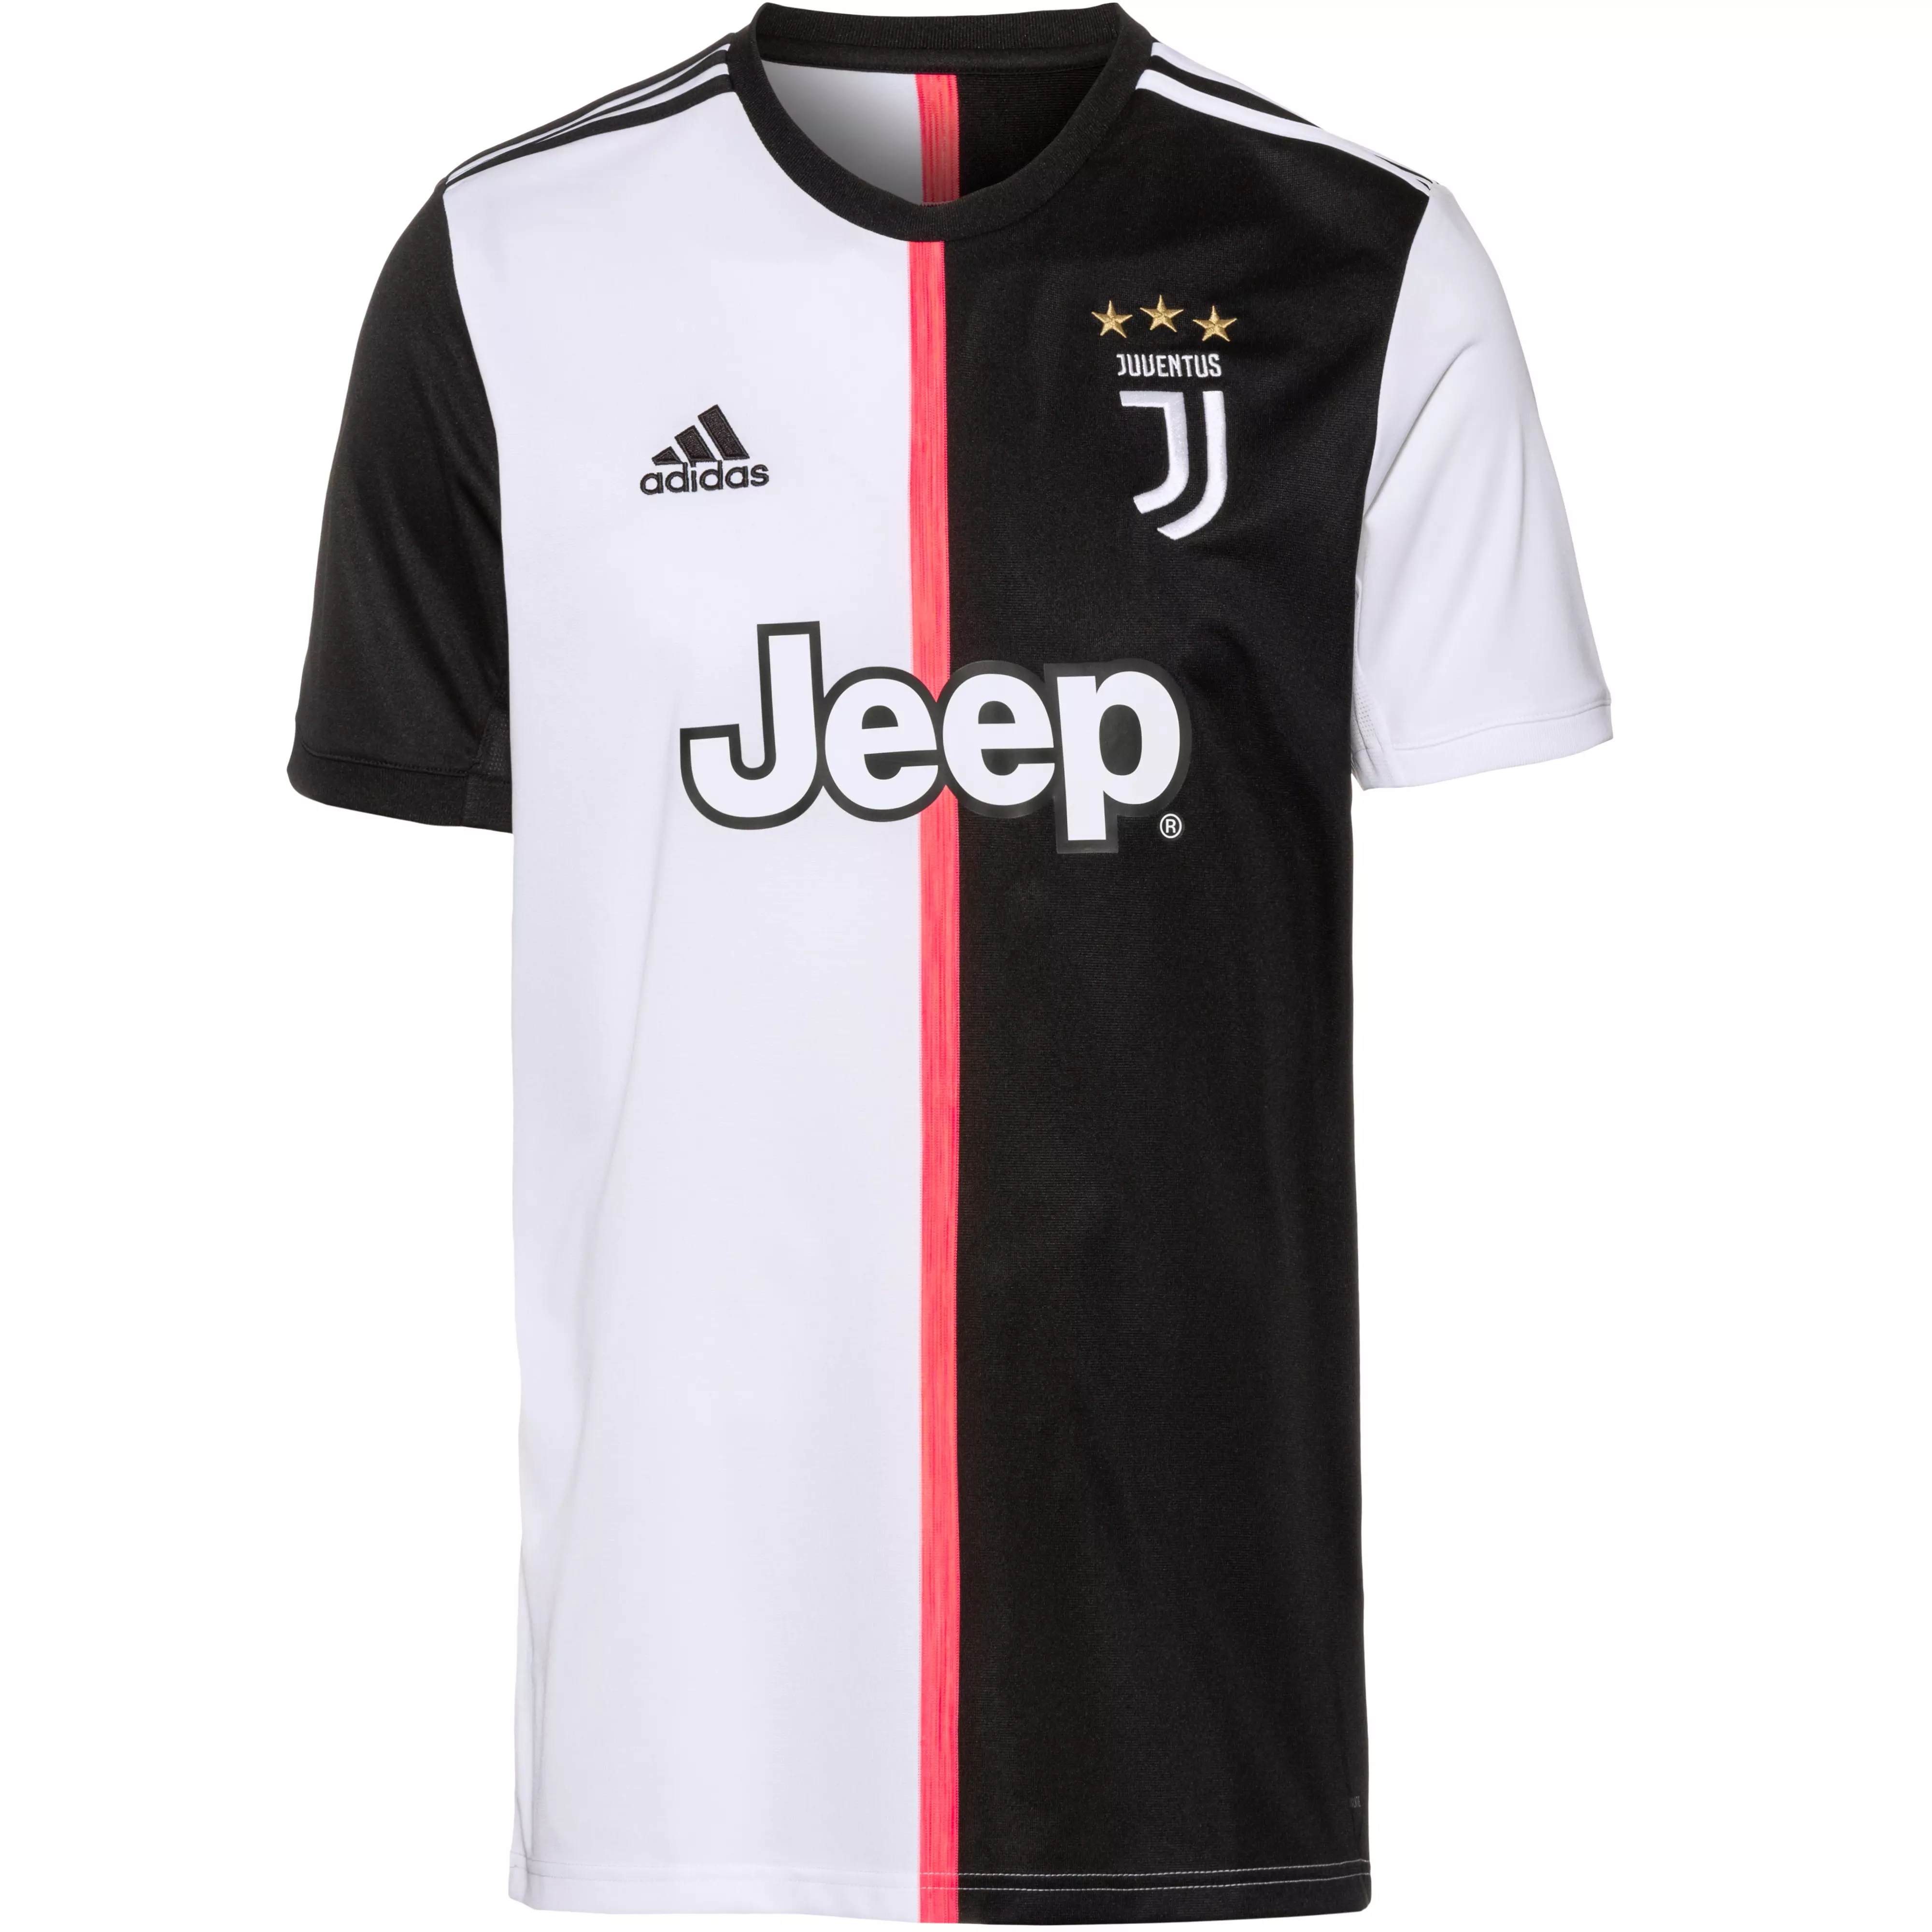 Adidas Juventus Turin 19 20 Heim Trikot Herren Black White Im Online Shop Von Sportscheck Kaufen